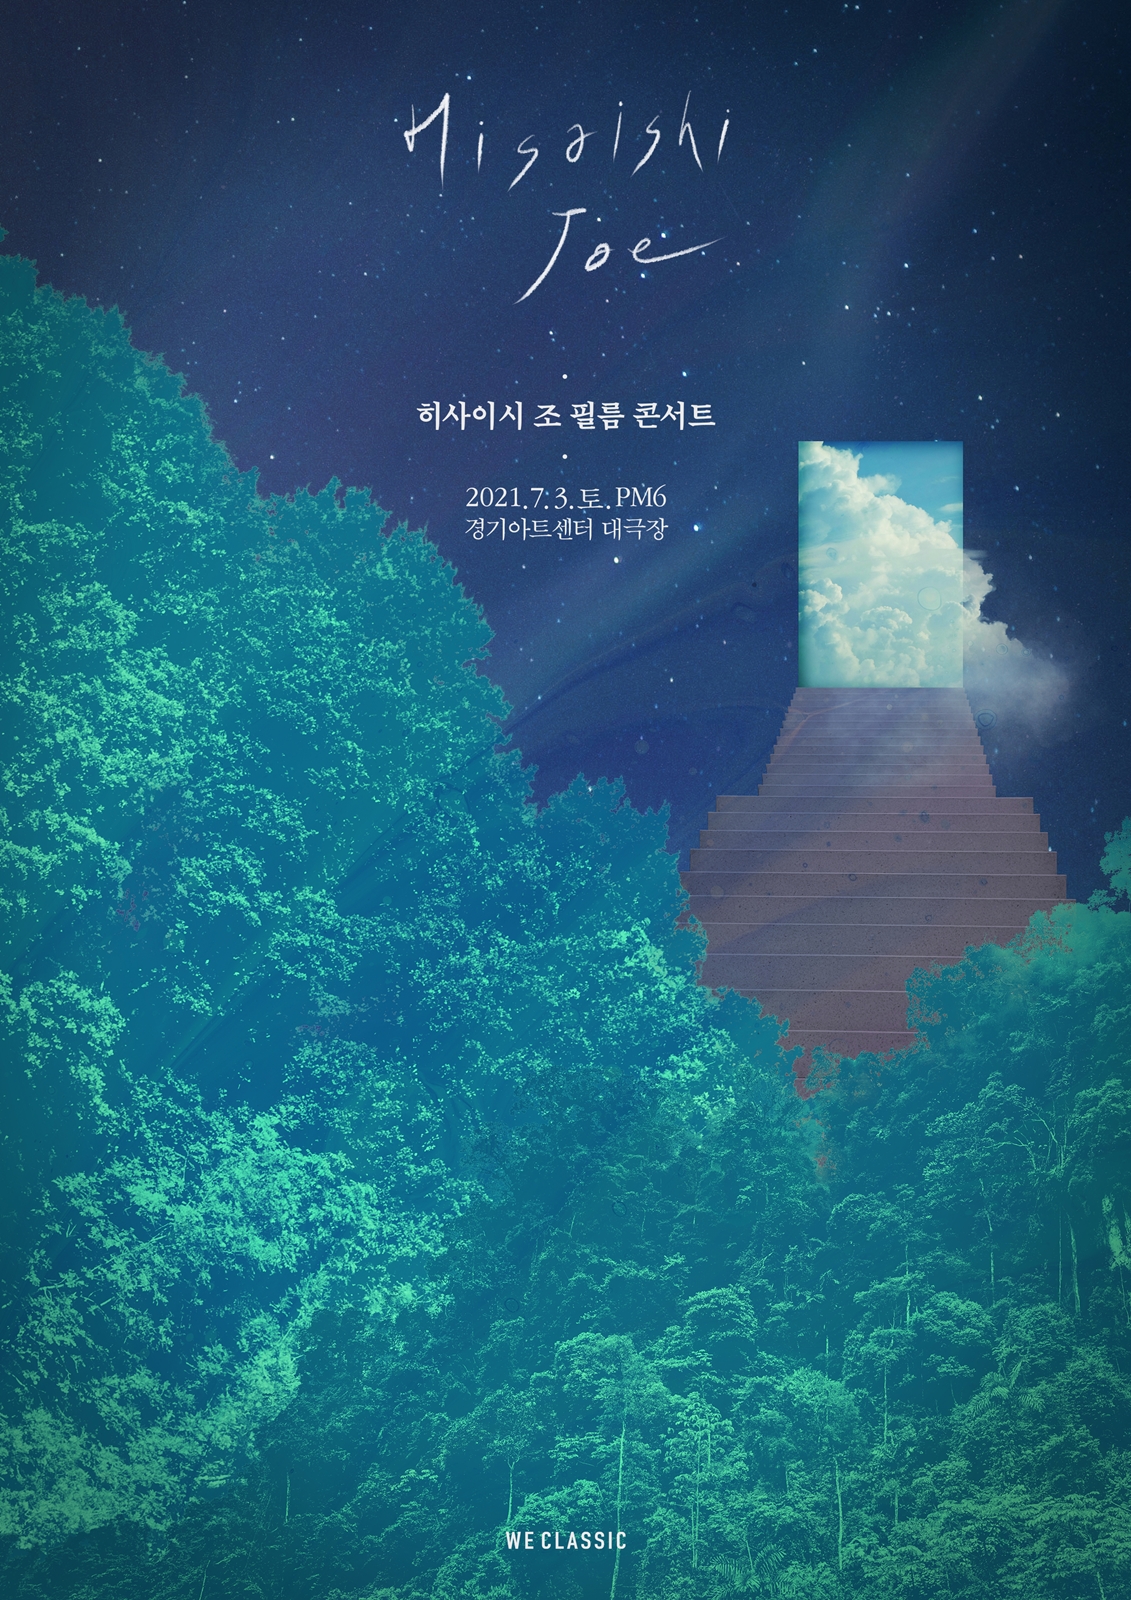 ‘히사이시 조 필름 콘서트’ 서울 공연 매진,앵콜 공연 확정! 오늘 5월 14일(금) 티켓 오픈